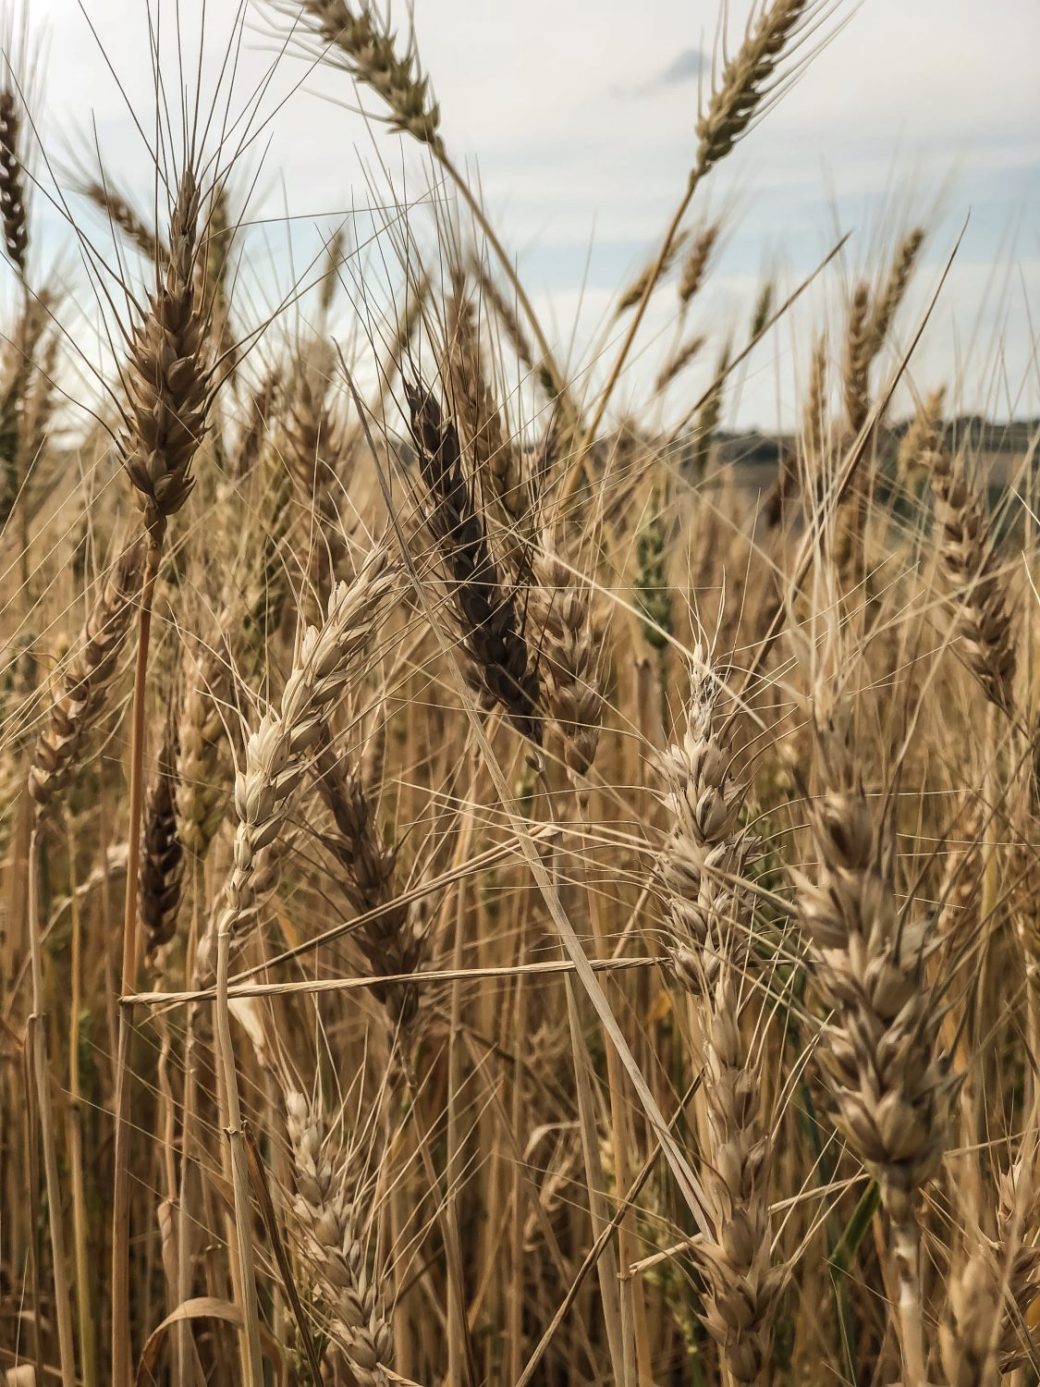 Wheat growing in a field